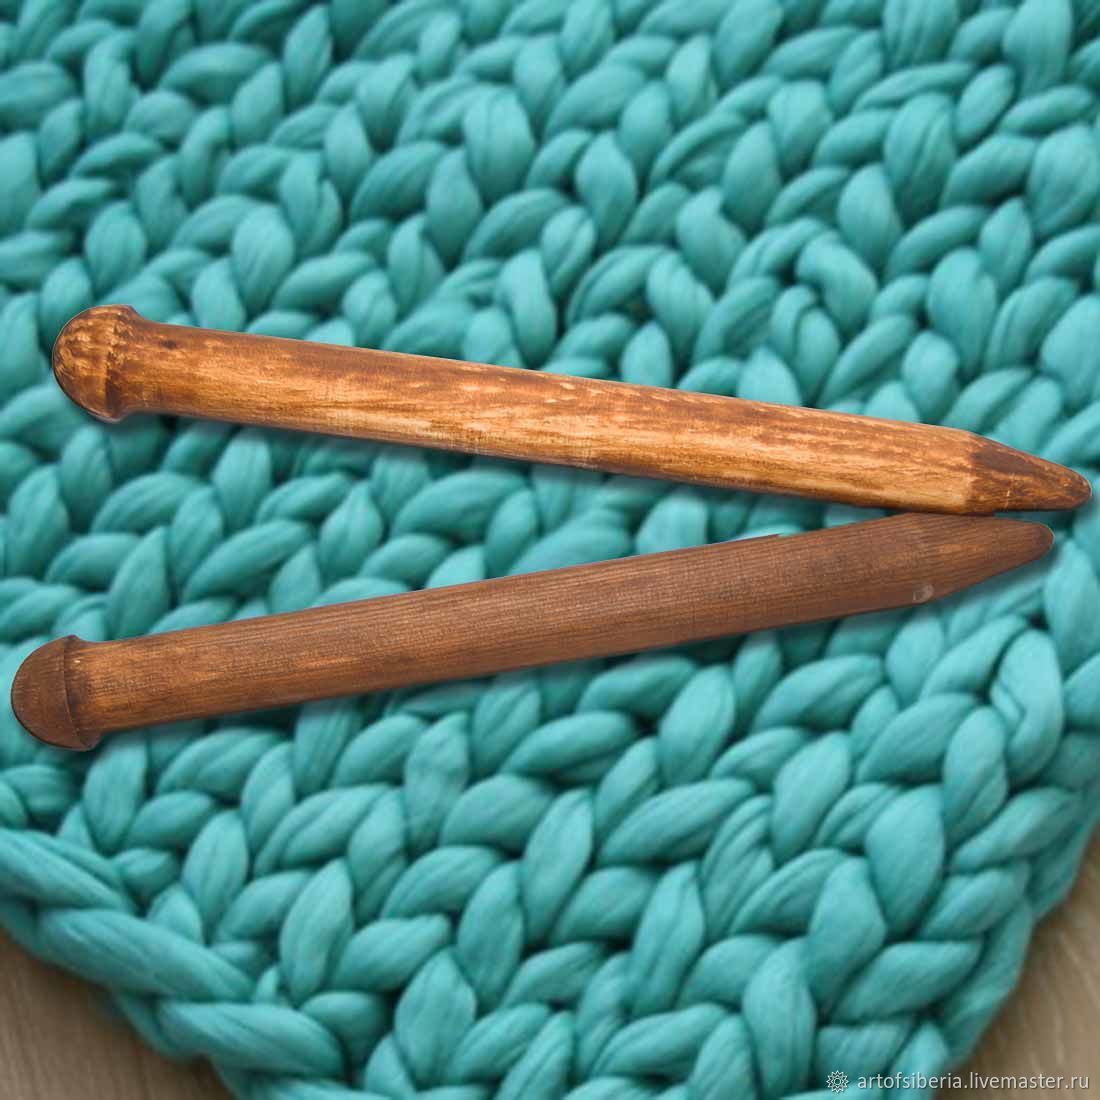 Деревянные спицы для вязания из древесины сосны 35мм/400мм. N16